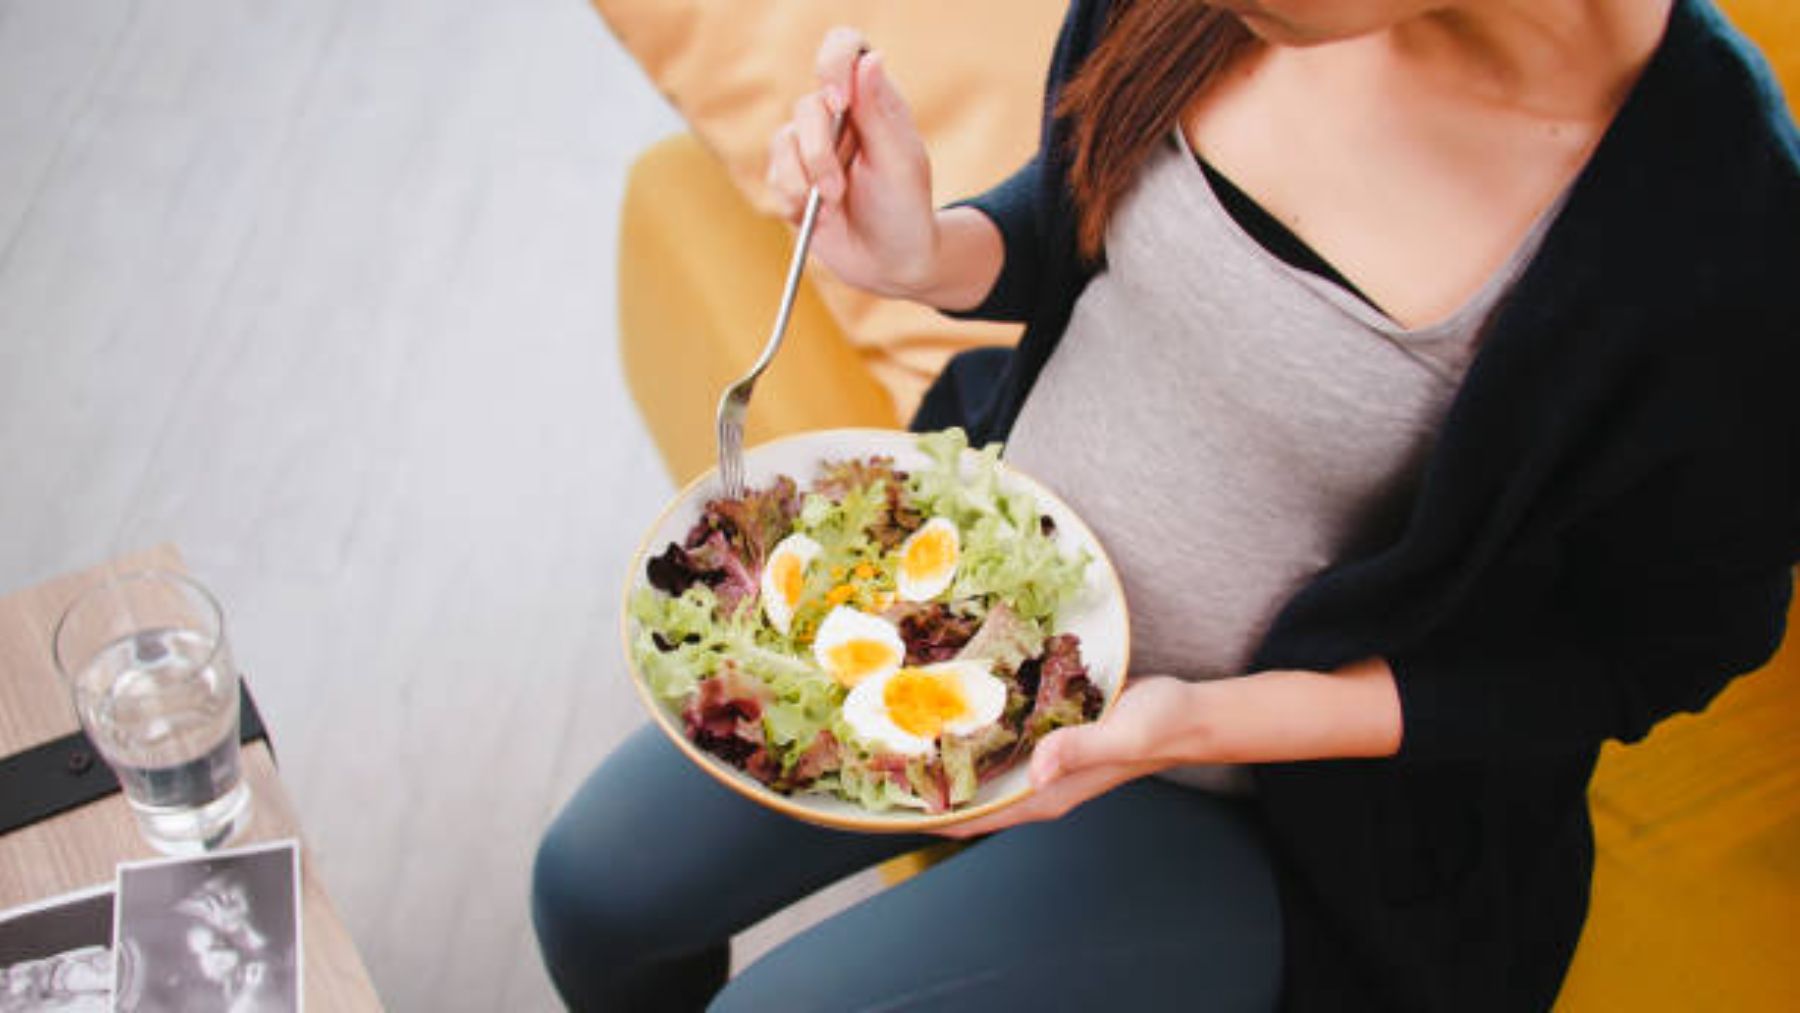 Descubre los alimentos que durante el embarazo podrían condicionar la salud del bebé